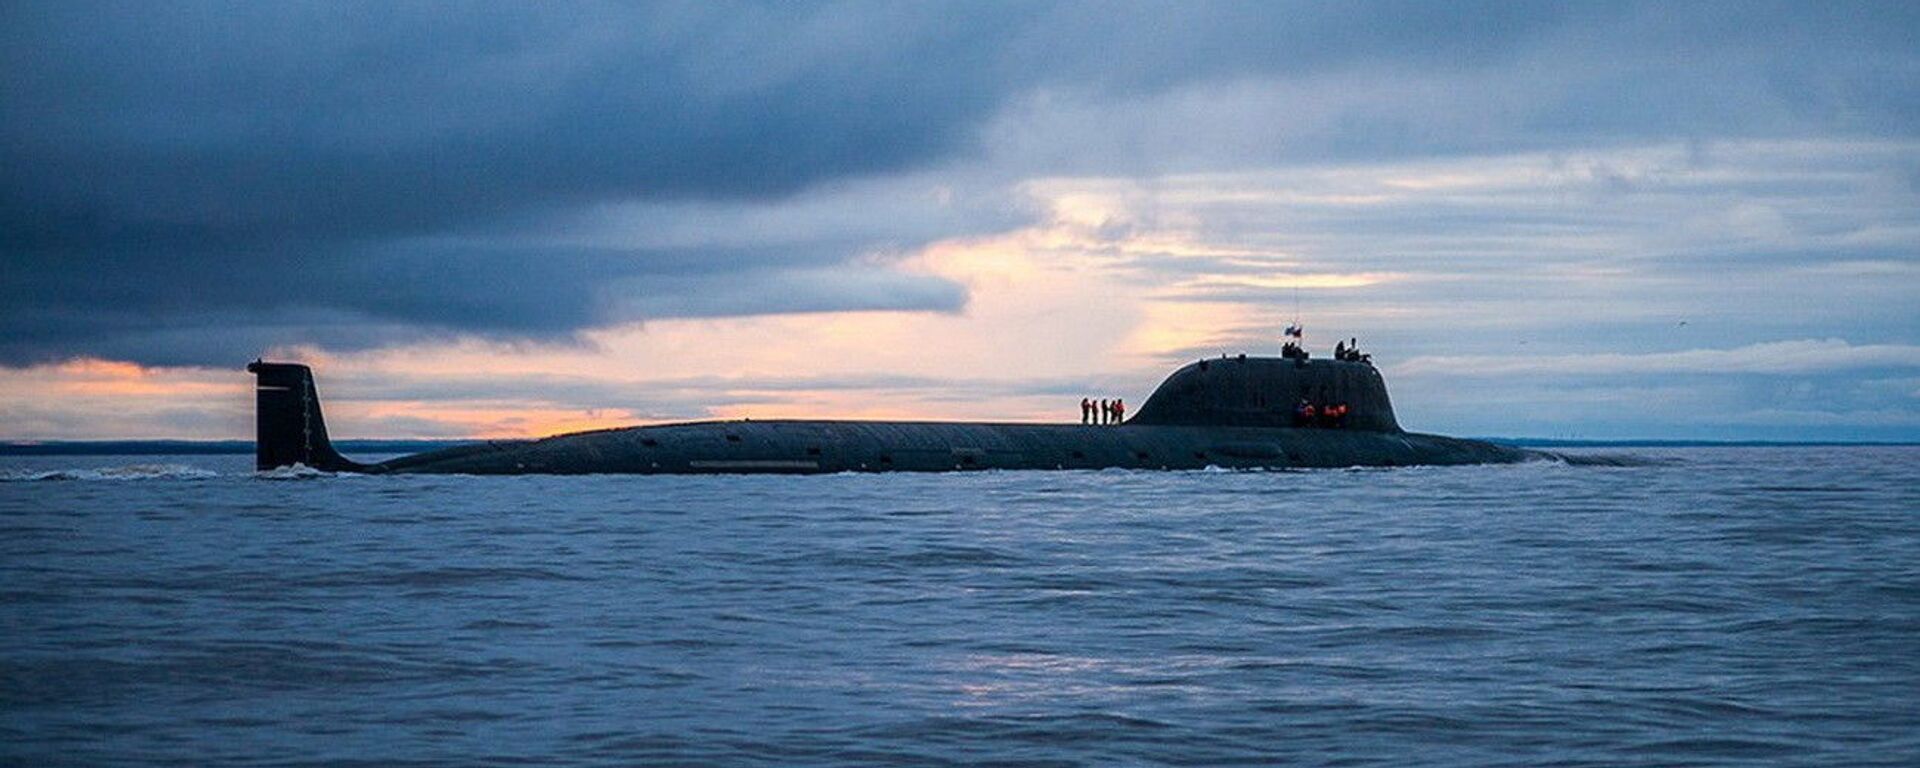 Атомная подводная лодка Северного флота «Северодвинск» - Sputnik Азербайджан, 1920, 04.10.2021